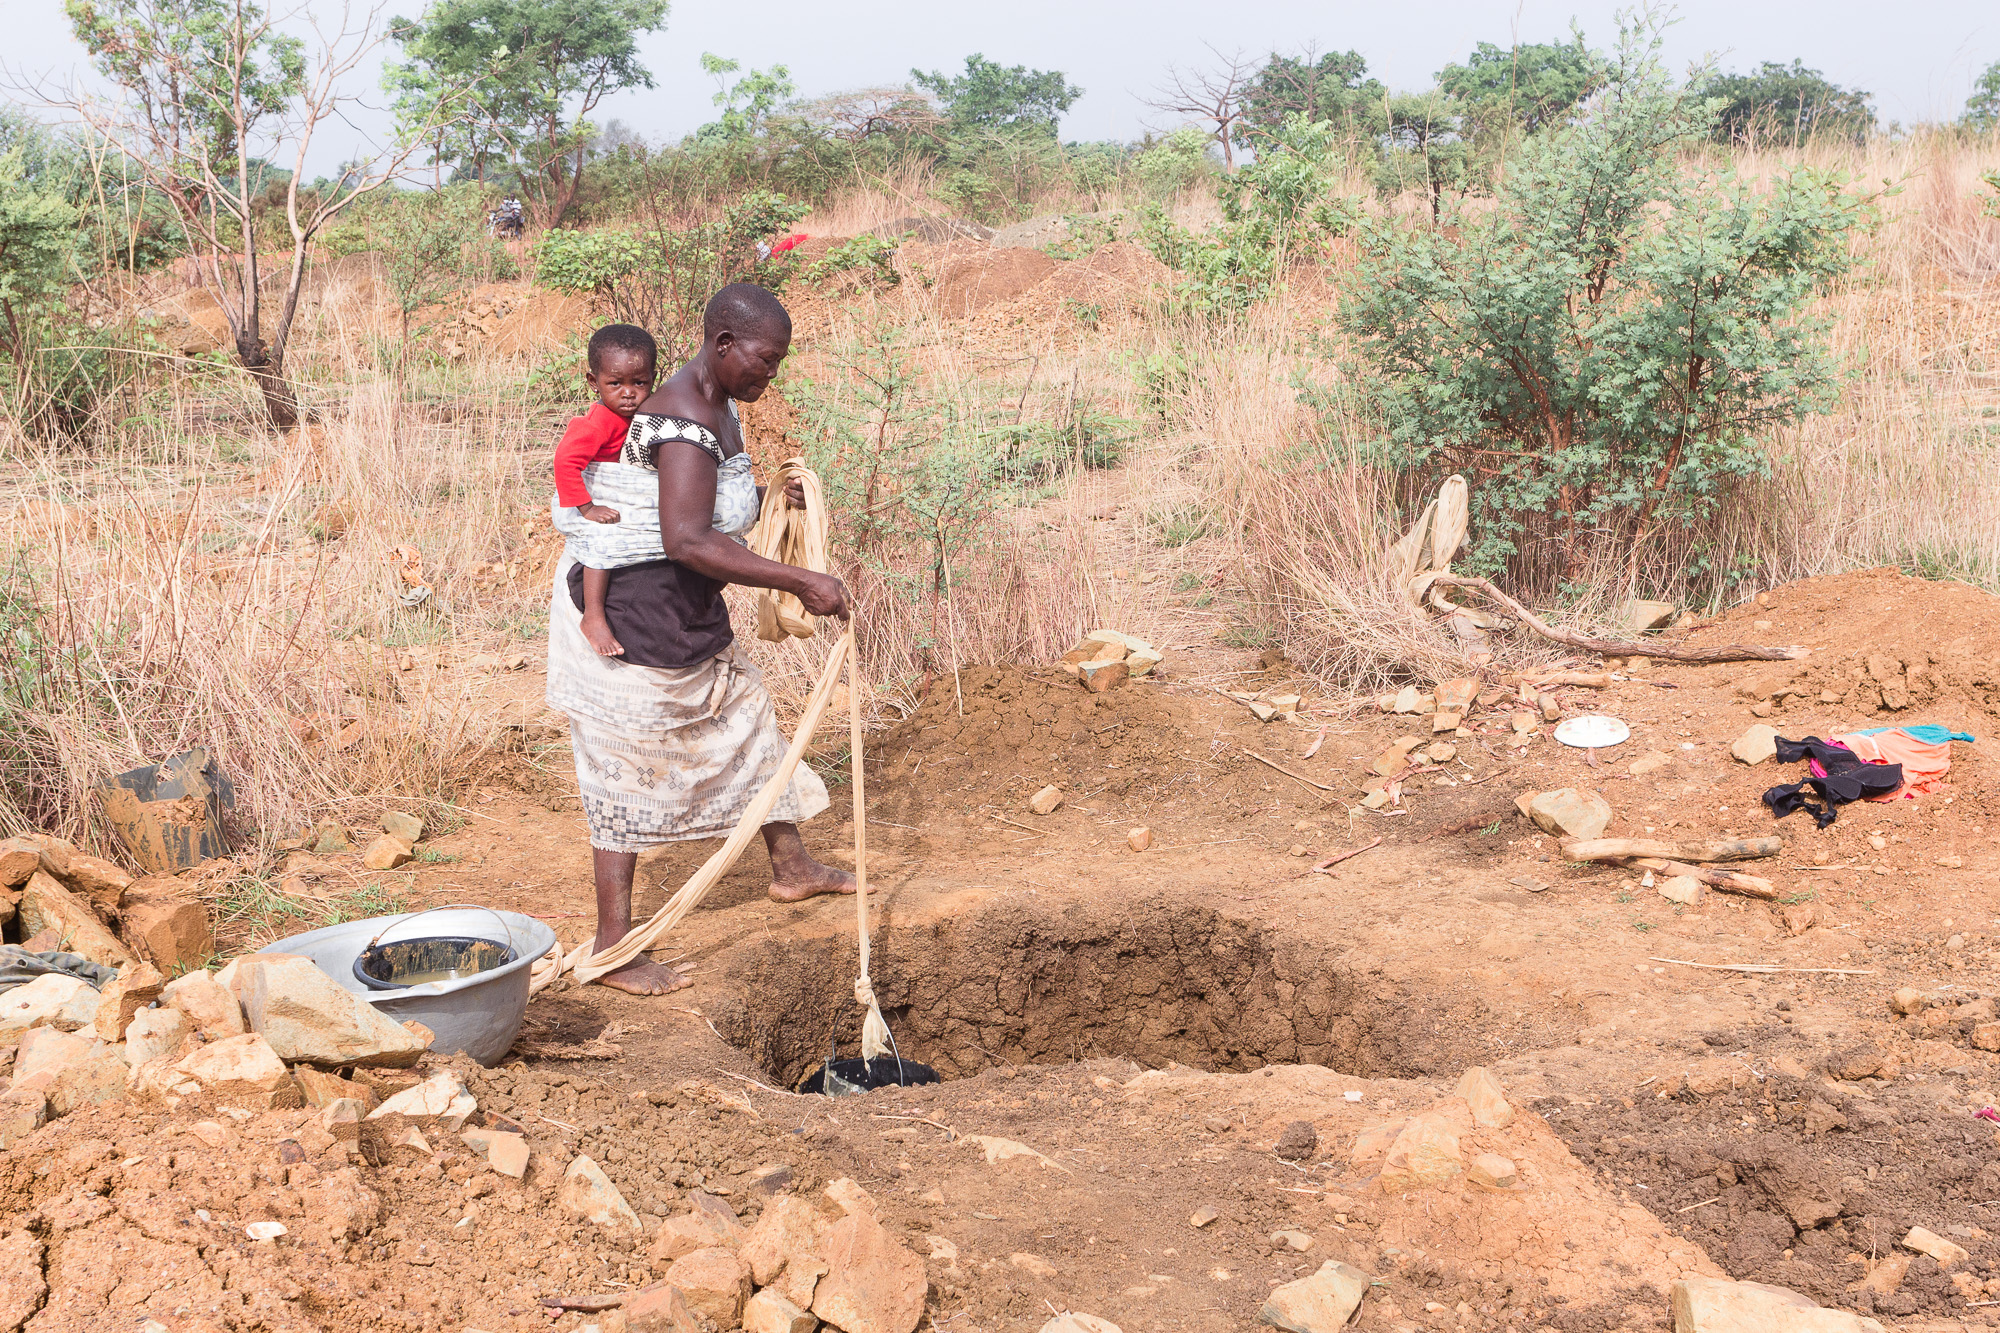 Chercheuse d'or avec enfant sur le dos descendant un seau dans un puits, pays Lobi, Burkina Faso